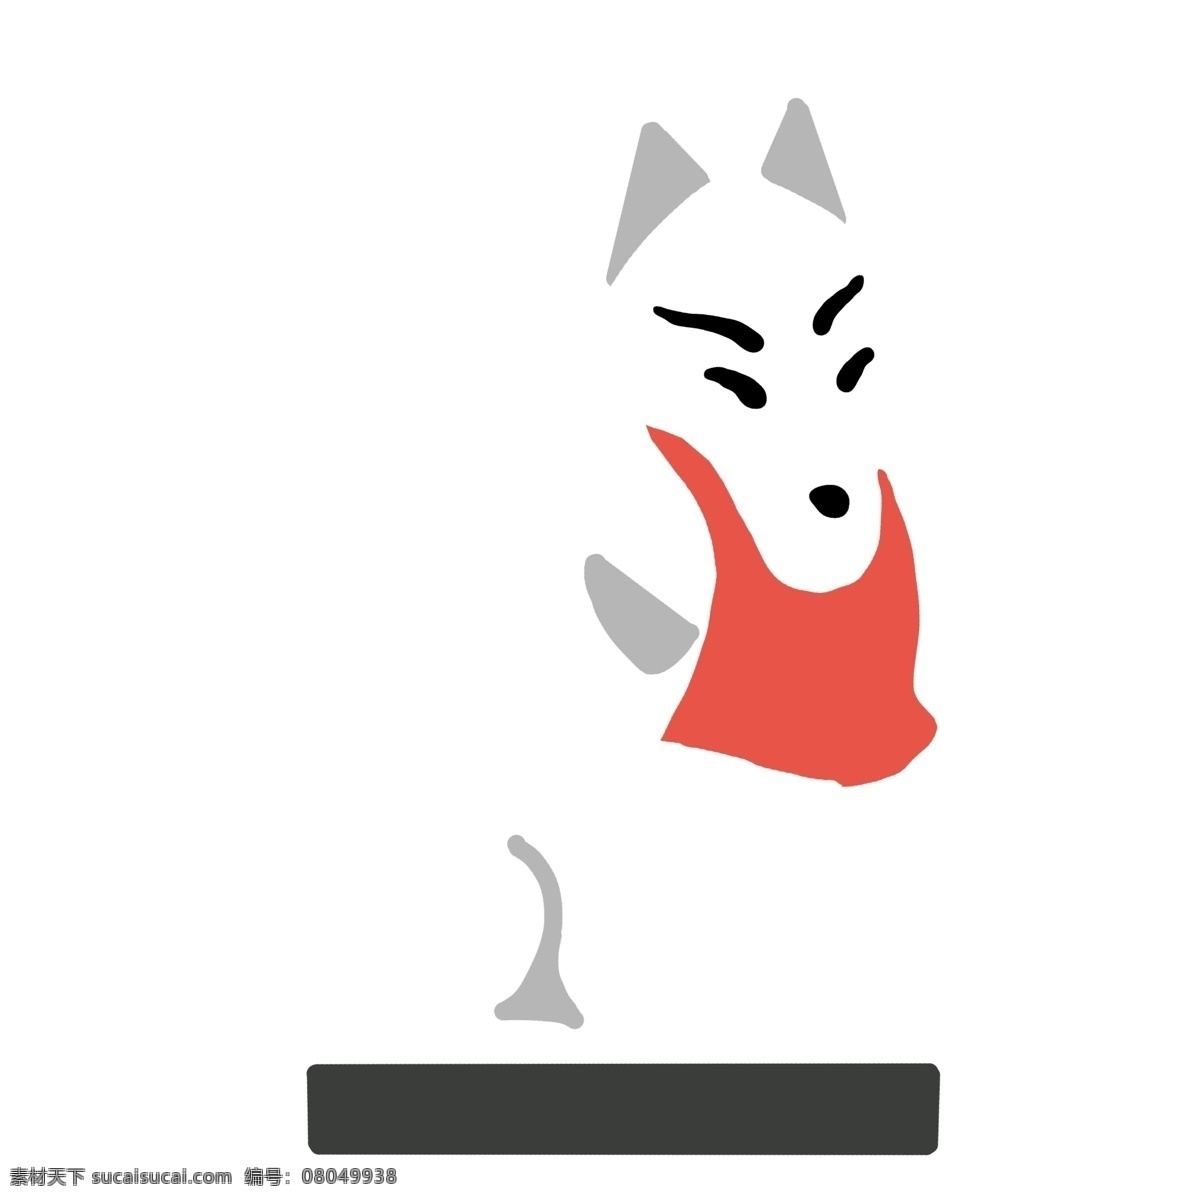 日本 狐狸 装饰 插画 日本狐狸 漂亮的狐狸 创意狐狸 立体狐狸 卡通狐狸 狐狸装饰 狐狸的插画